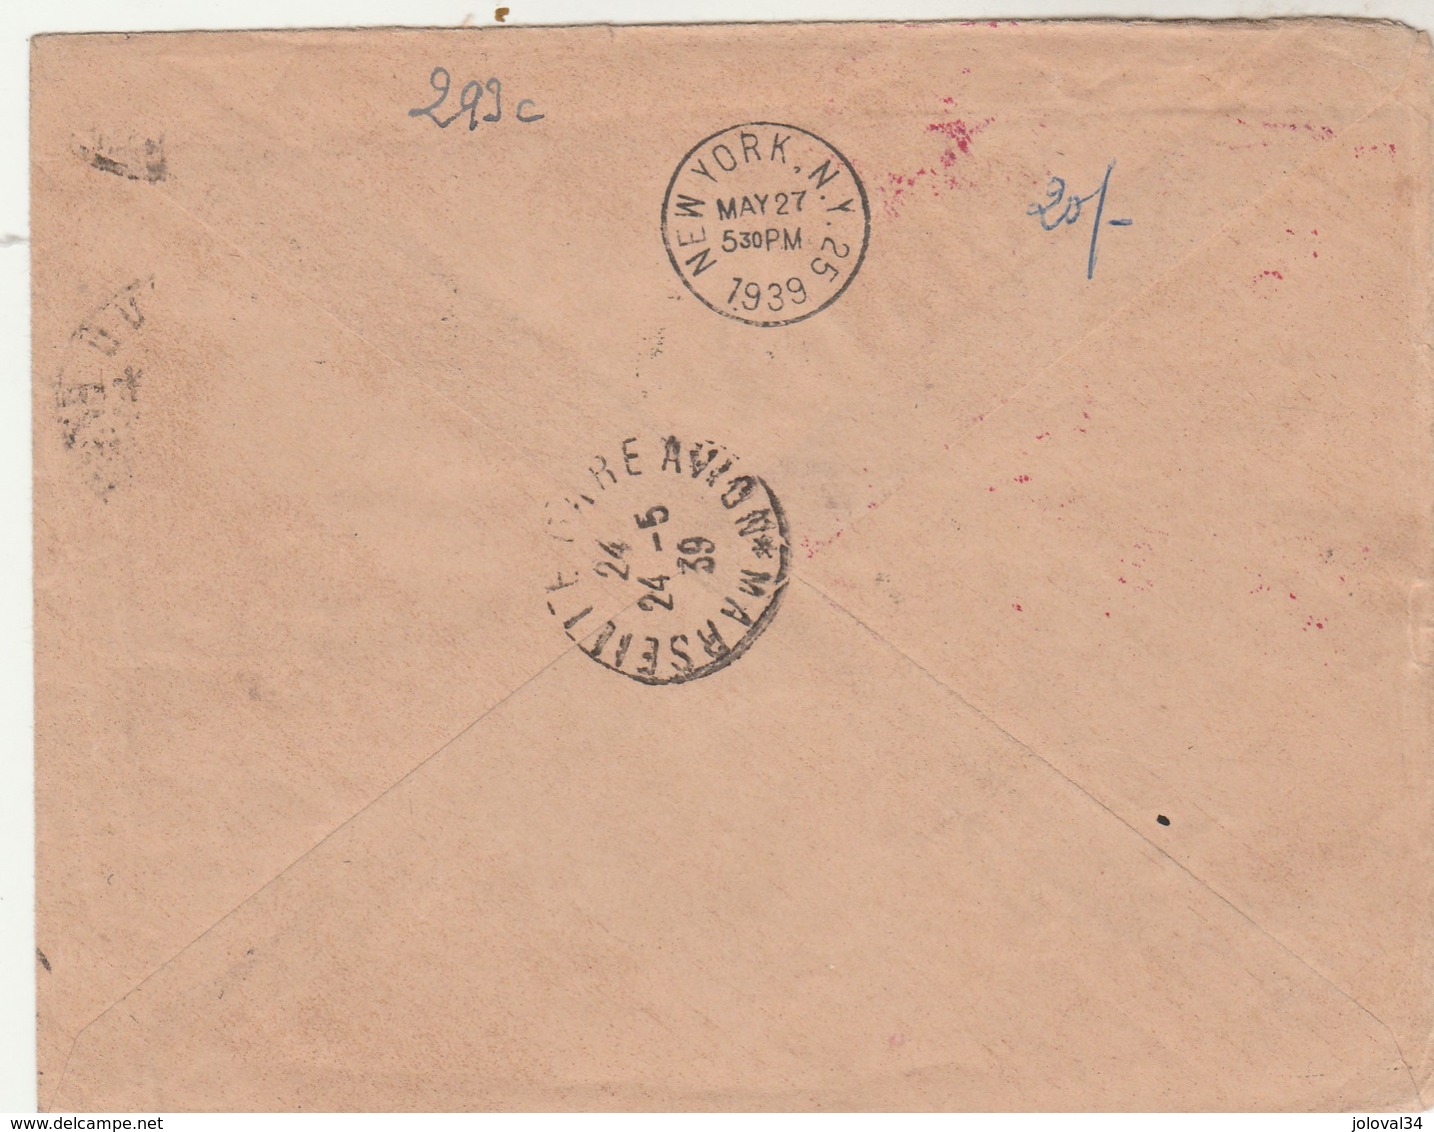 Poste Aérienne 1 Er Service Postal Aérien France Etats Unis 24/5/1939 Lyon Villeurbanne Via Marseille New York - 1927-1959 Briefe & Dokumente